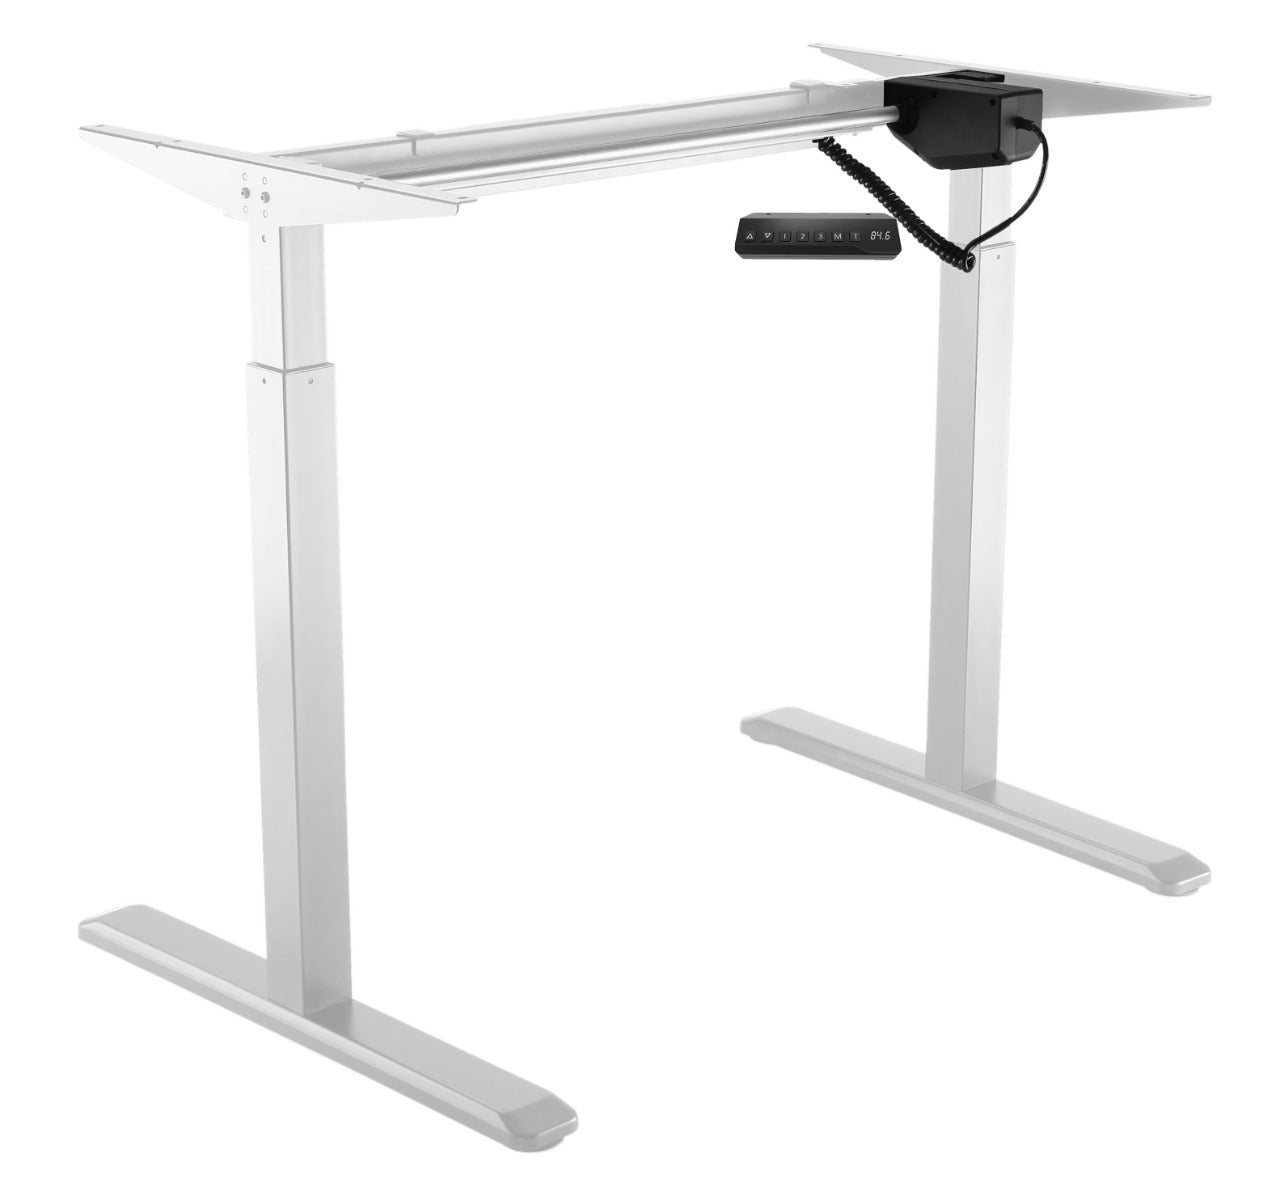 Order Office Furniture Single Motor Electric Desk Frame Only - Black or White Option - OOF01